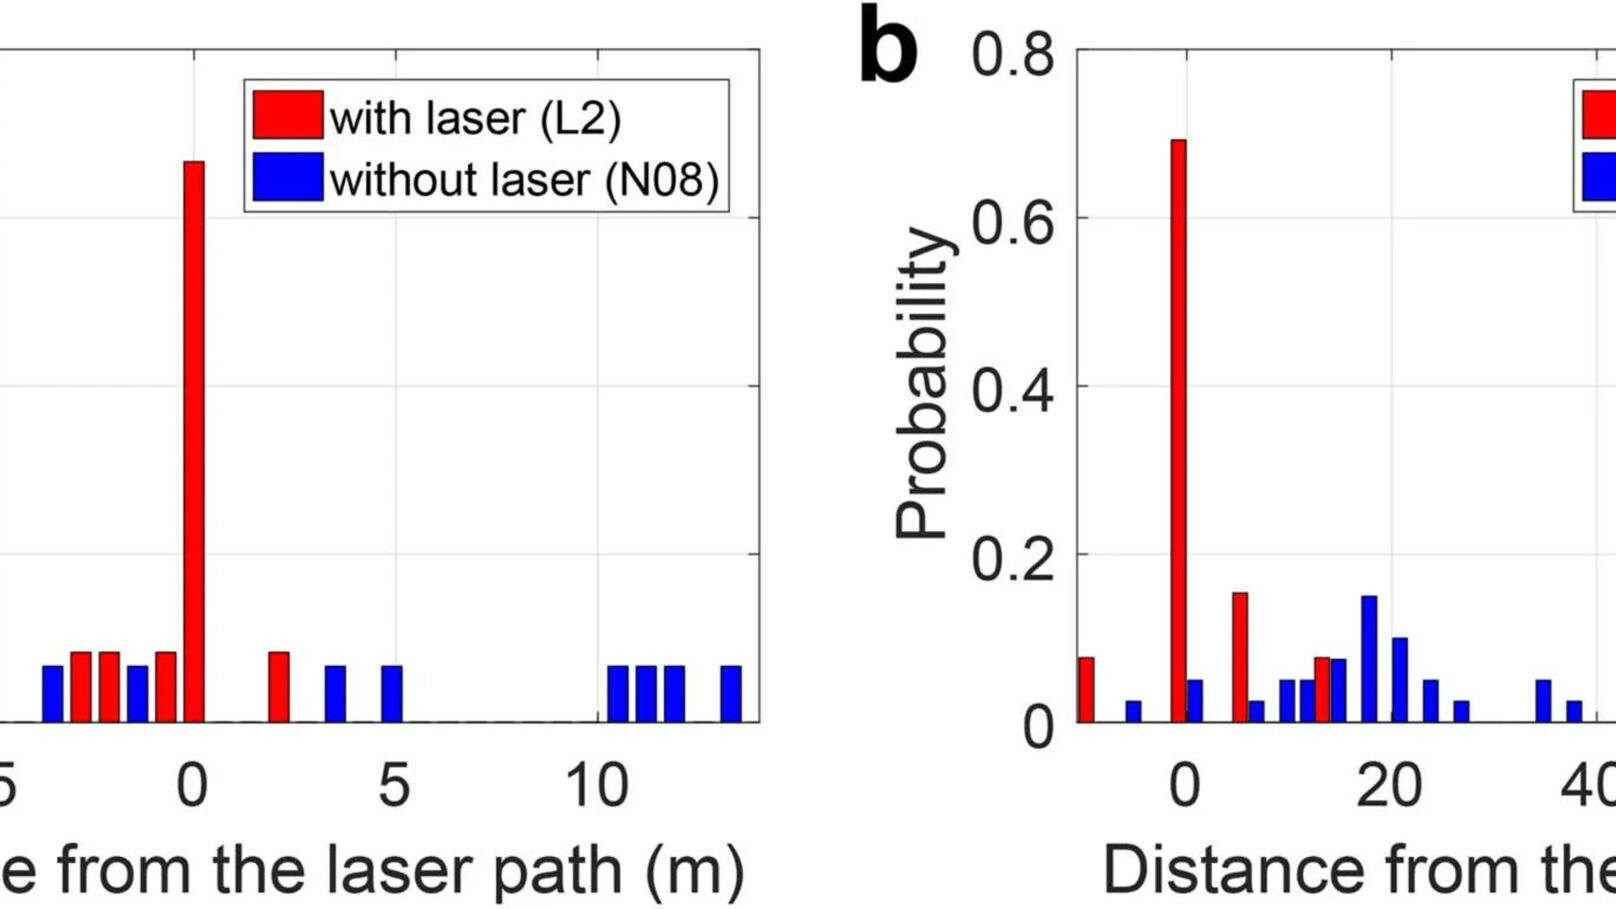 Coup de foudre : un des graphiques étayant l'étude menée par l'Université de Genève sur la déviation laser de la foudre au Mont Säntis, avec données, statistiques ou images (en anglais)